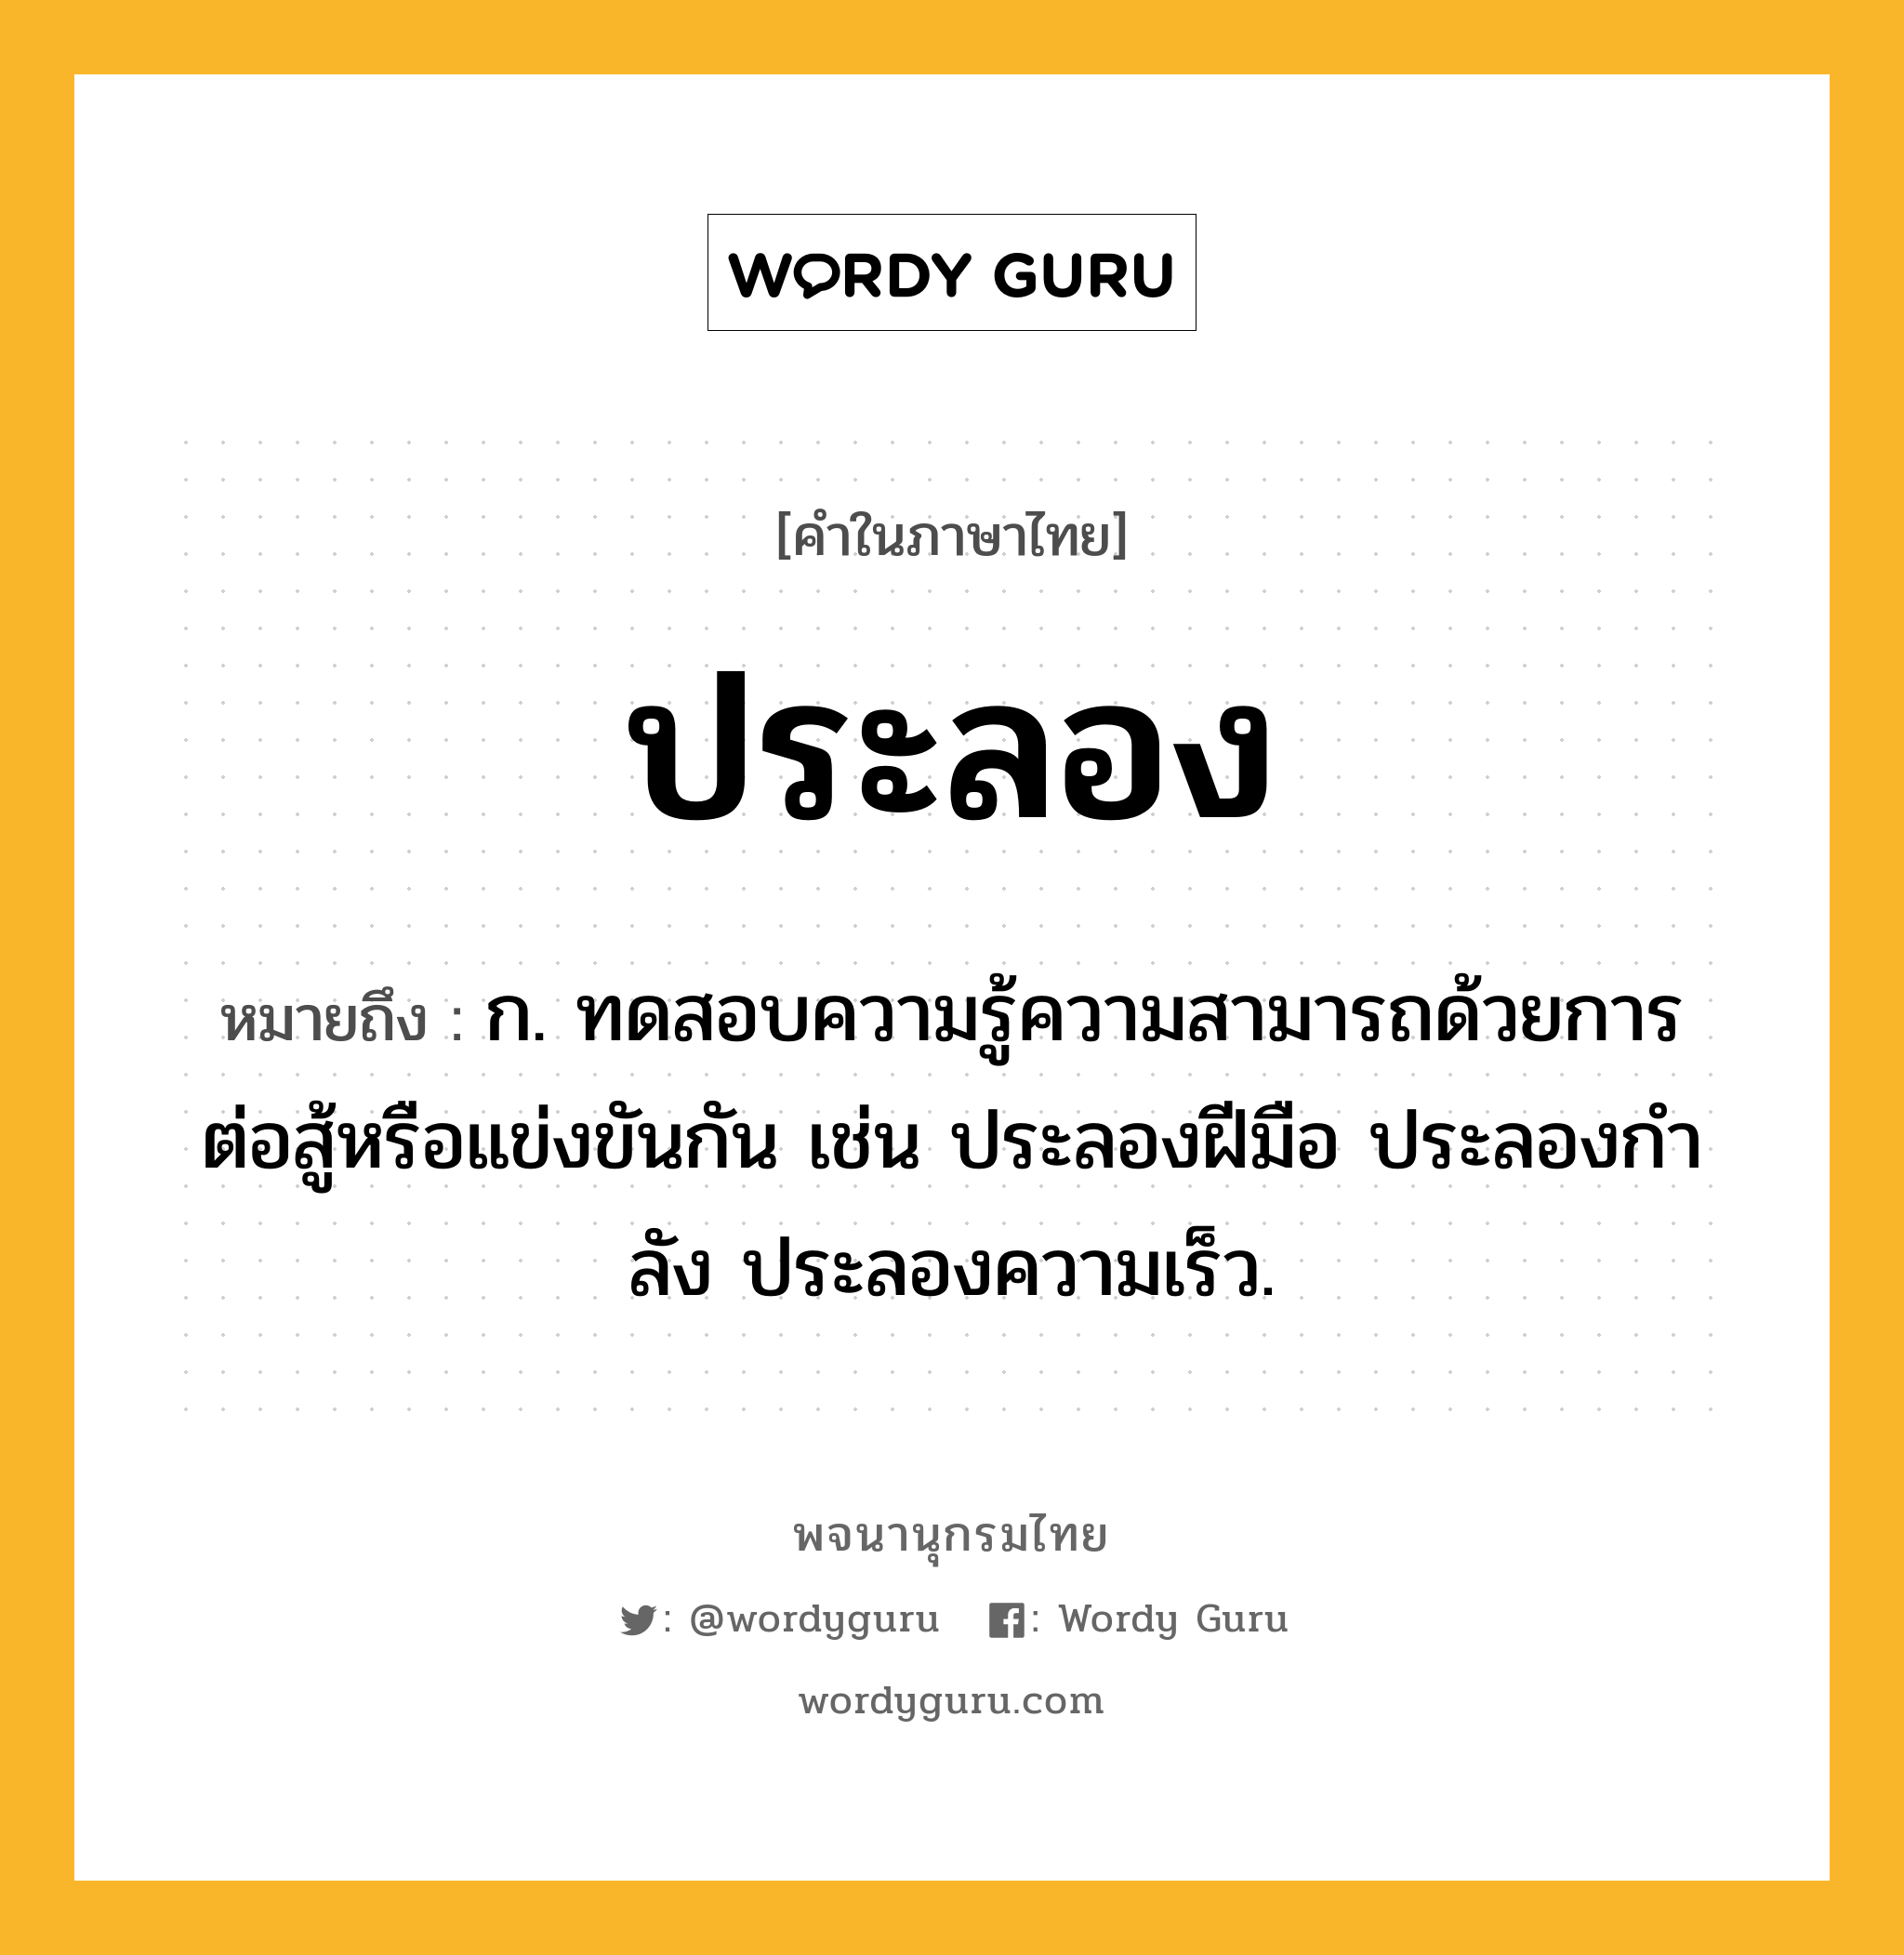 ประลอง ความหมาย หมายถึงอะไร?, คำในภาษาไทย ประลอง หมายถึง ก. ทดสอบความรู้ความสามารถด้วยการต่อสู้หรือแข่งขันกัน เช่น ประลองฝีมือ ประลองกําลัง ประลองความเร็ว.